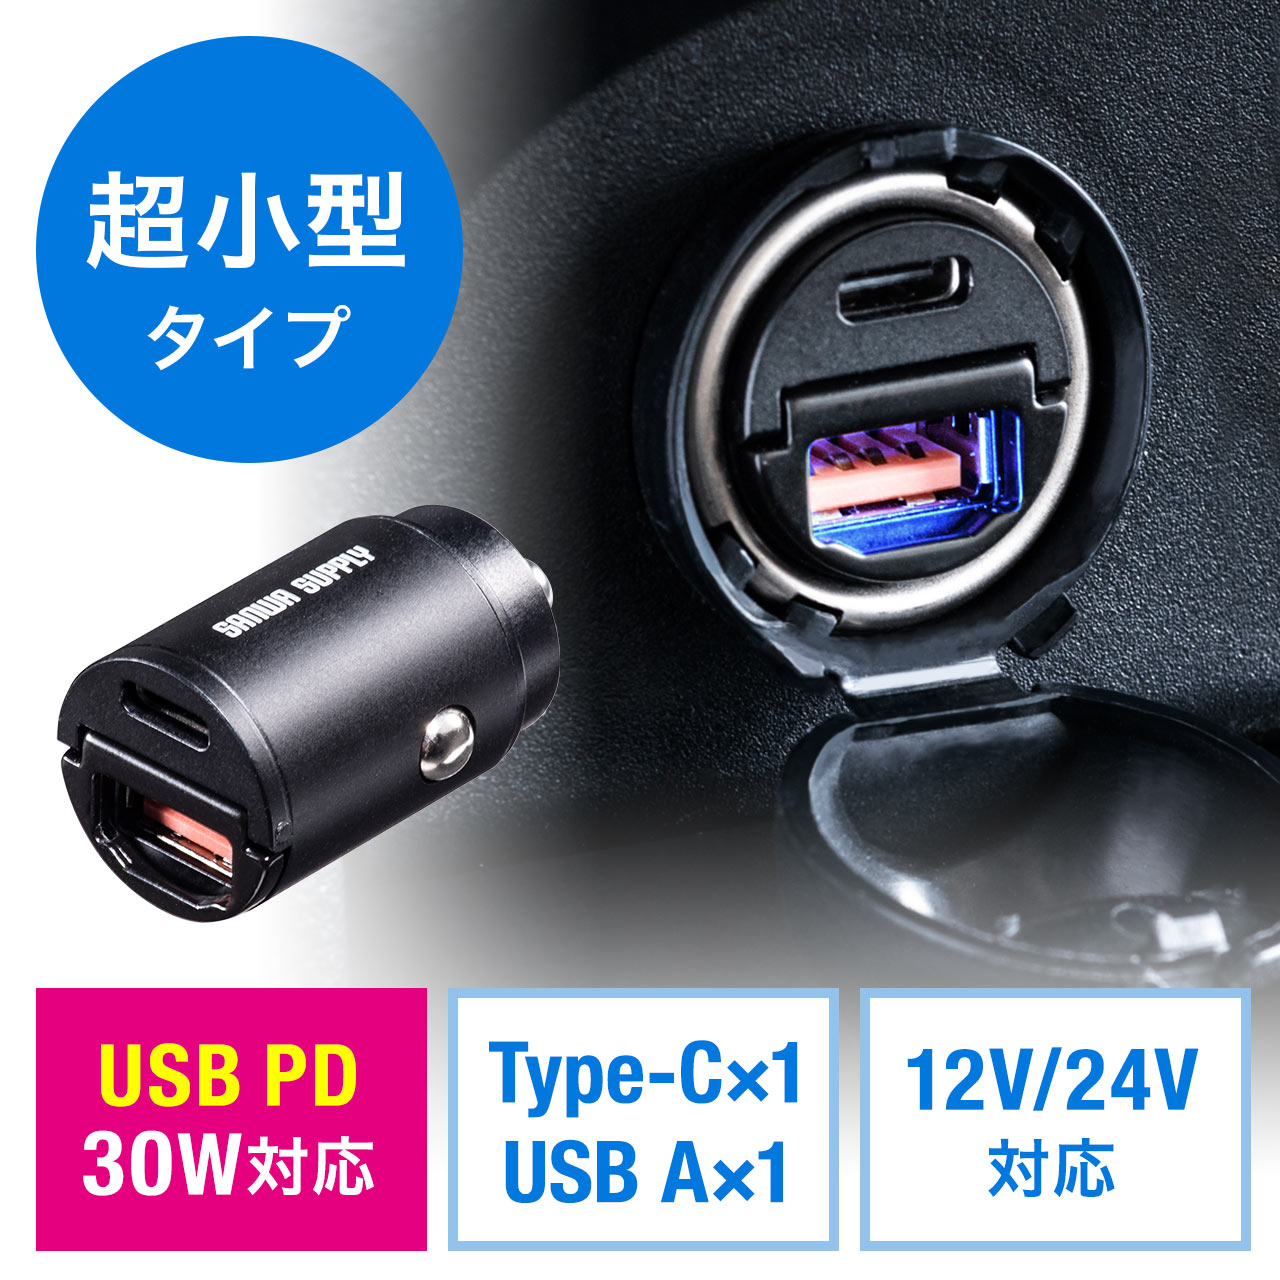 カーチャージャー USB PD30W USB Type-C 5V/2.4A USB A シガーソケット USB充電器 200-CAR088の販売商品  通販ならサンワダイレクト